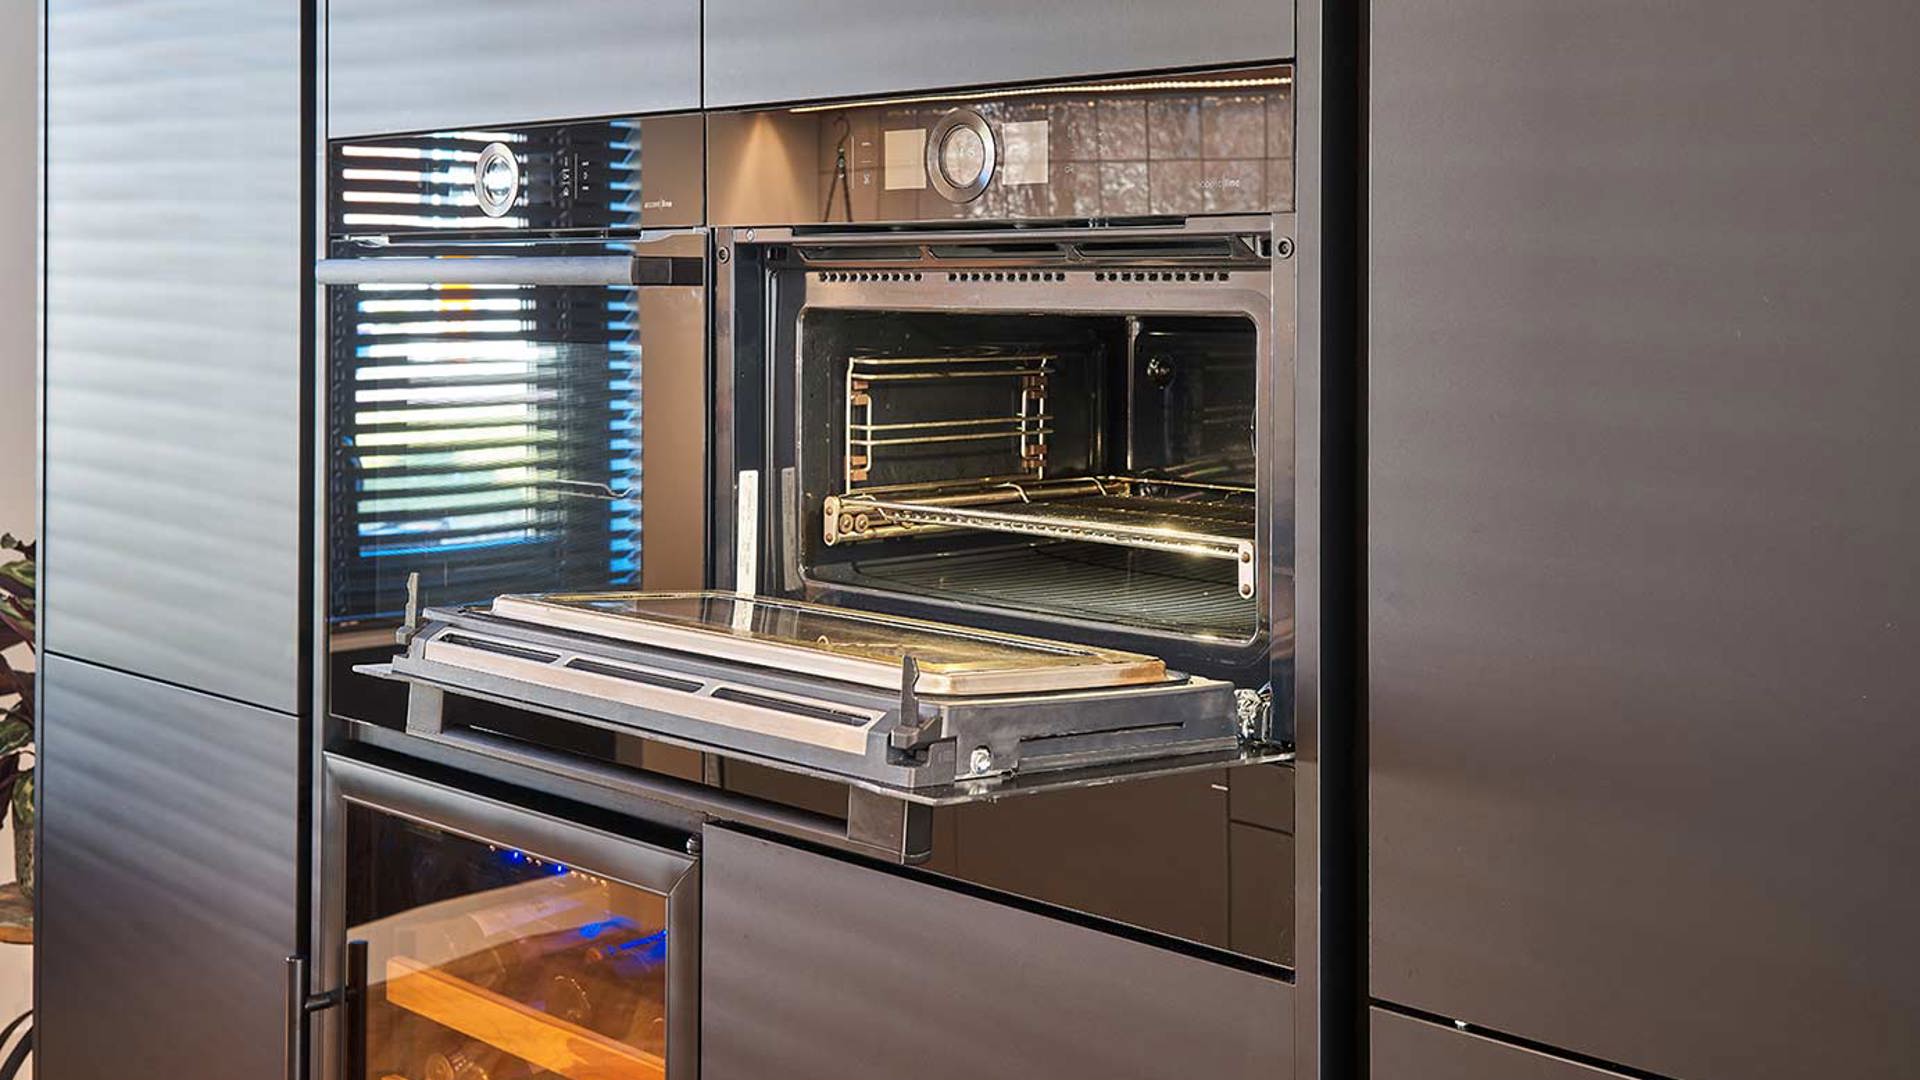 Moderne greeploze keuken Noordwijk, oven